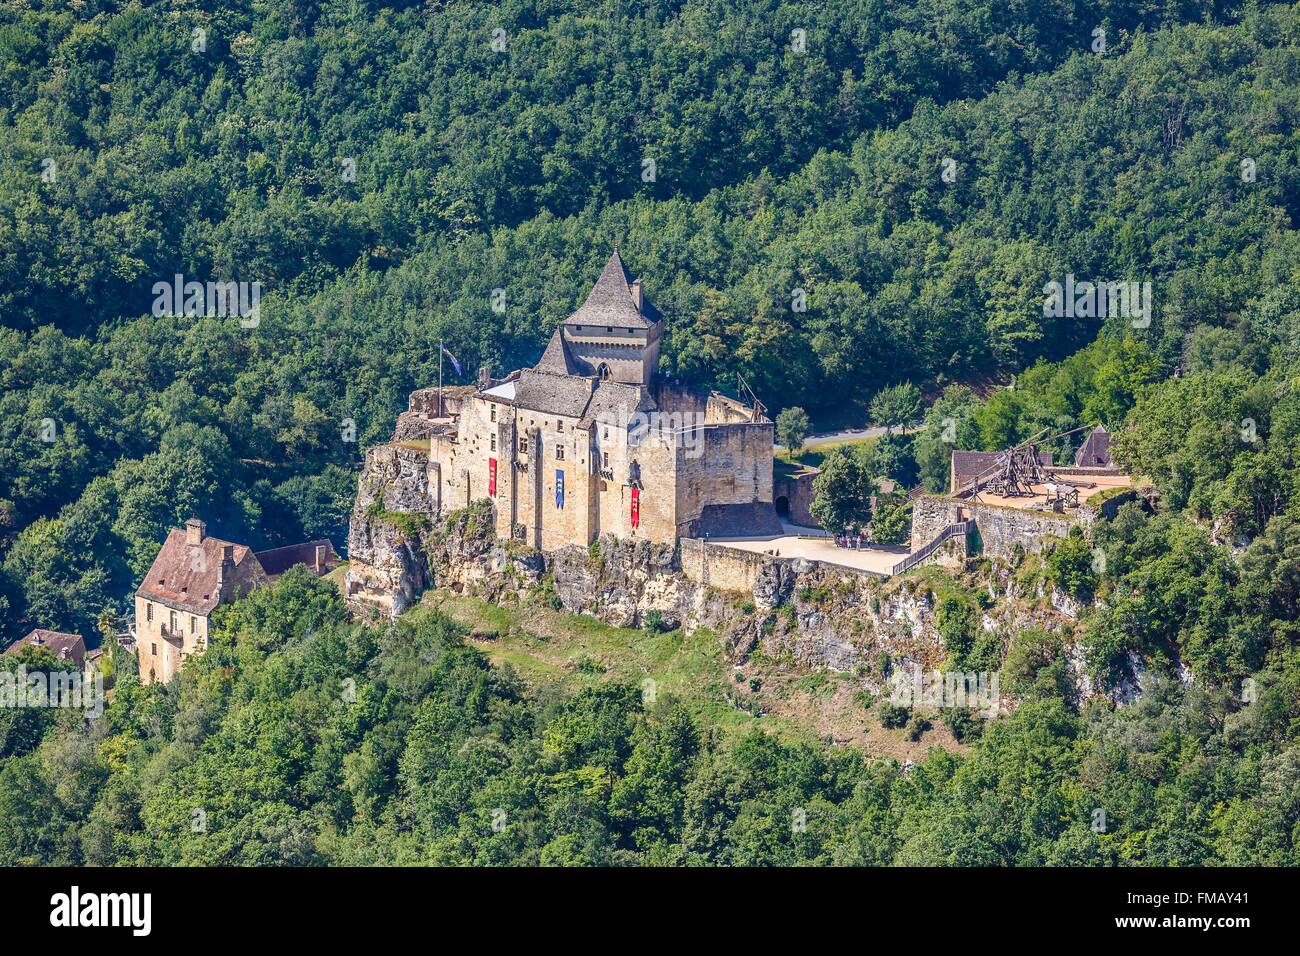 France, Dordogne, Castelnaud la Chapelle, labelled Les Plus Beaux Villages de France (The Most Beautiful Villages of France), Stock Photo